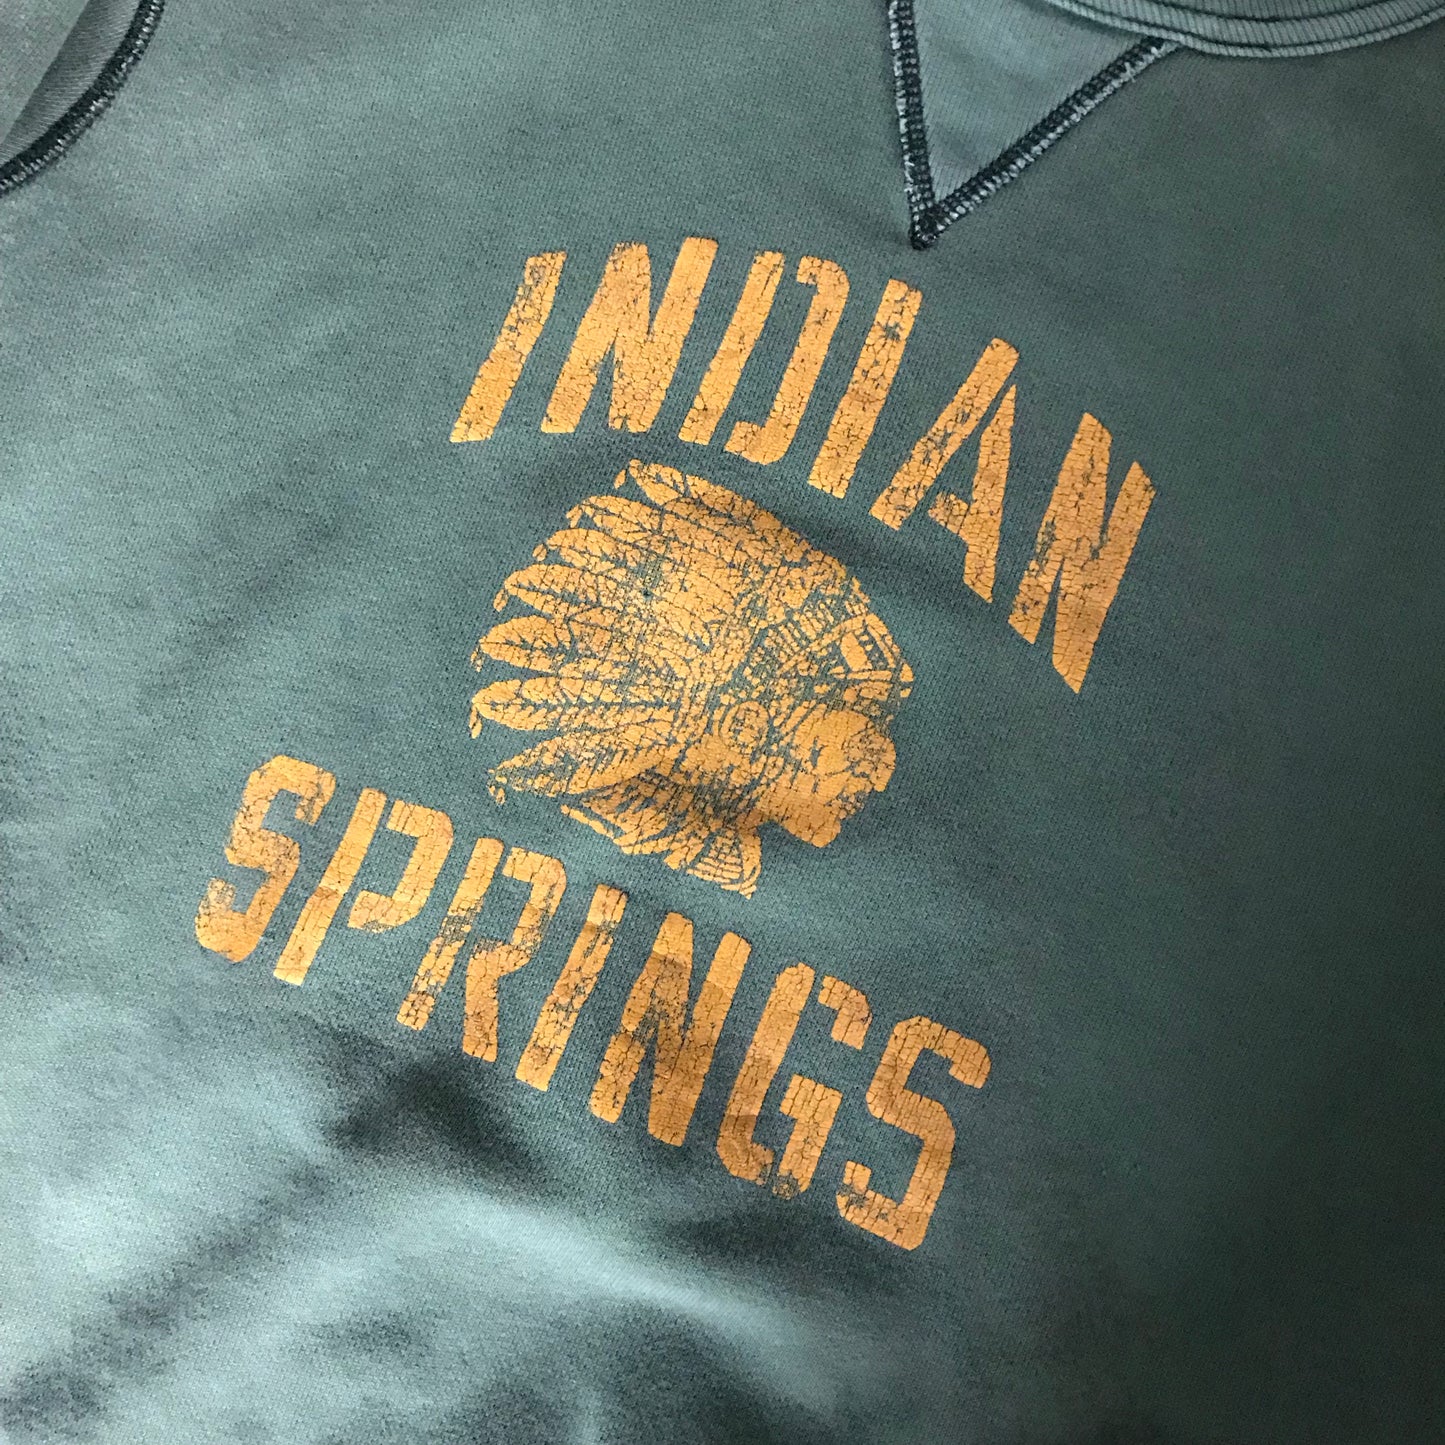 Ralph Lauren Indian Springs Sweatshirt